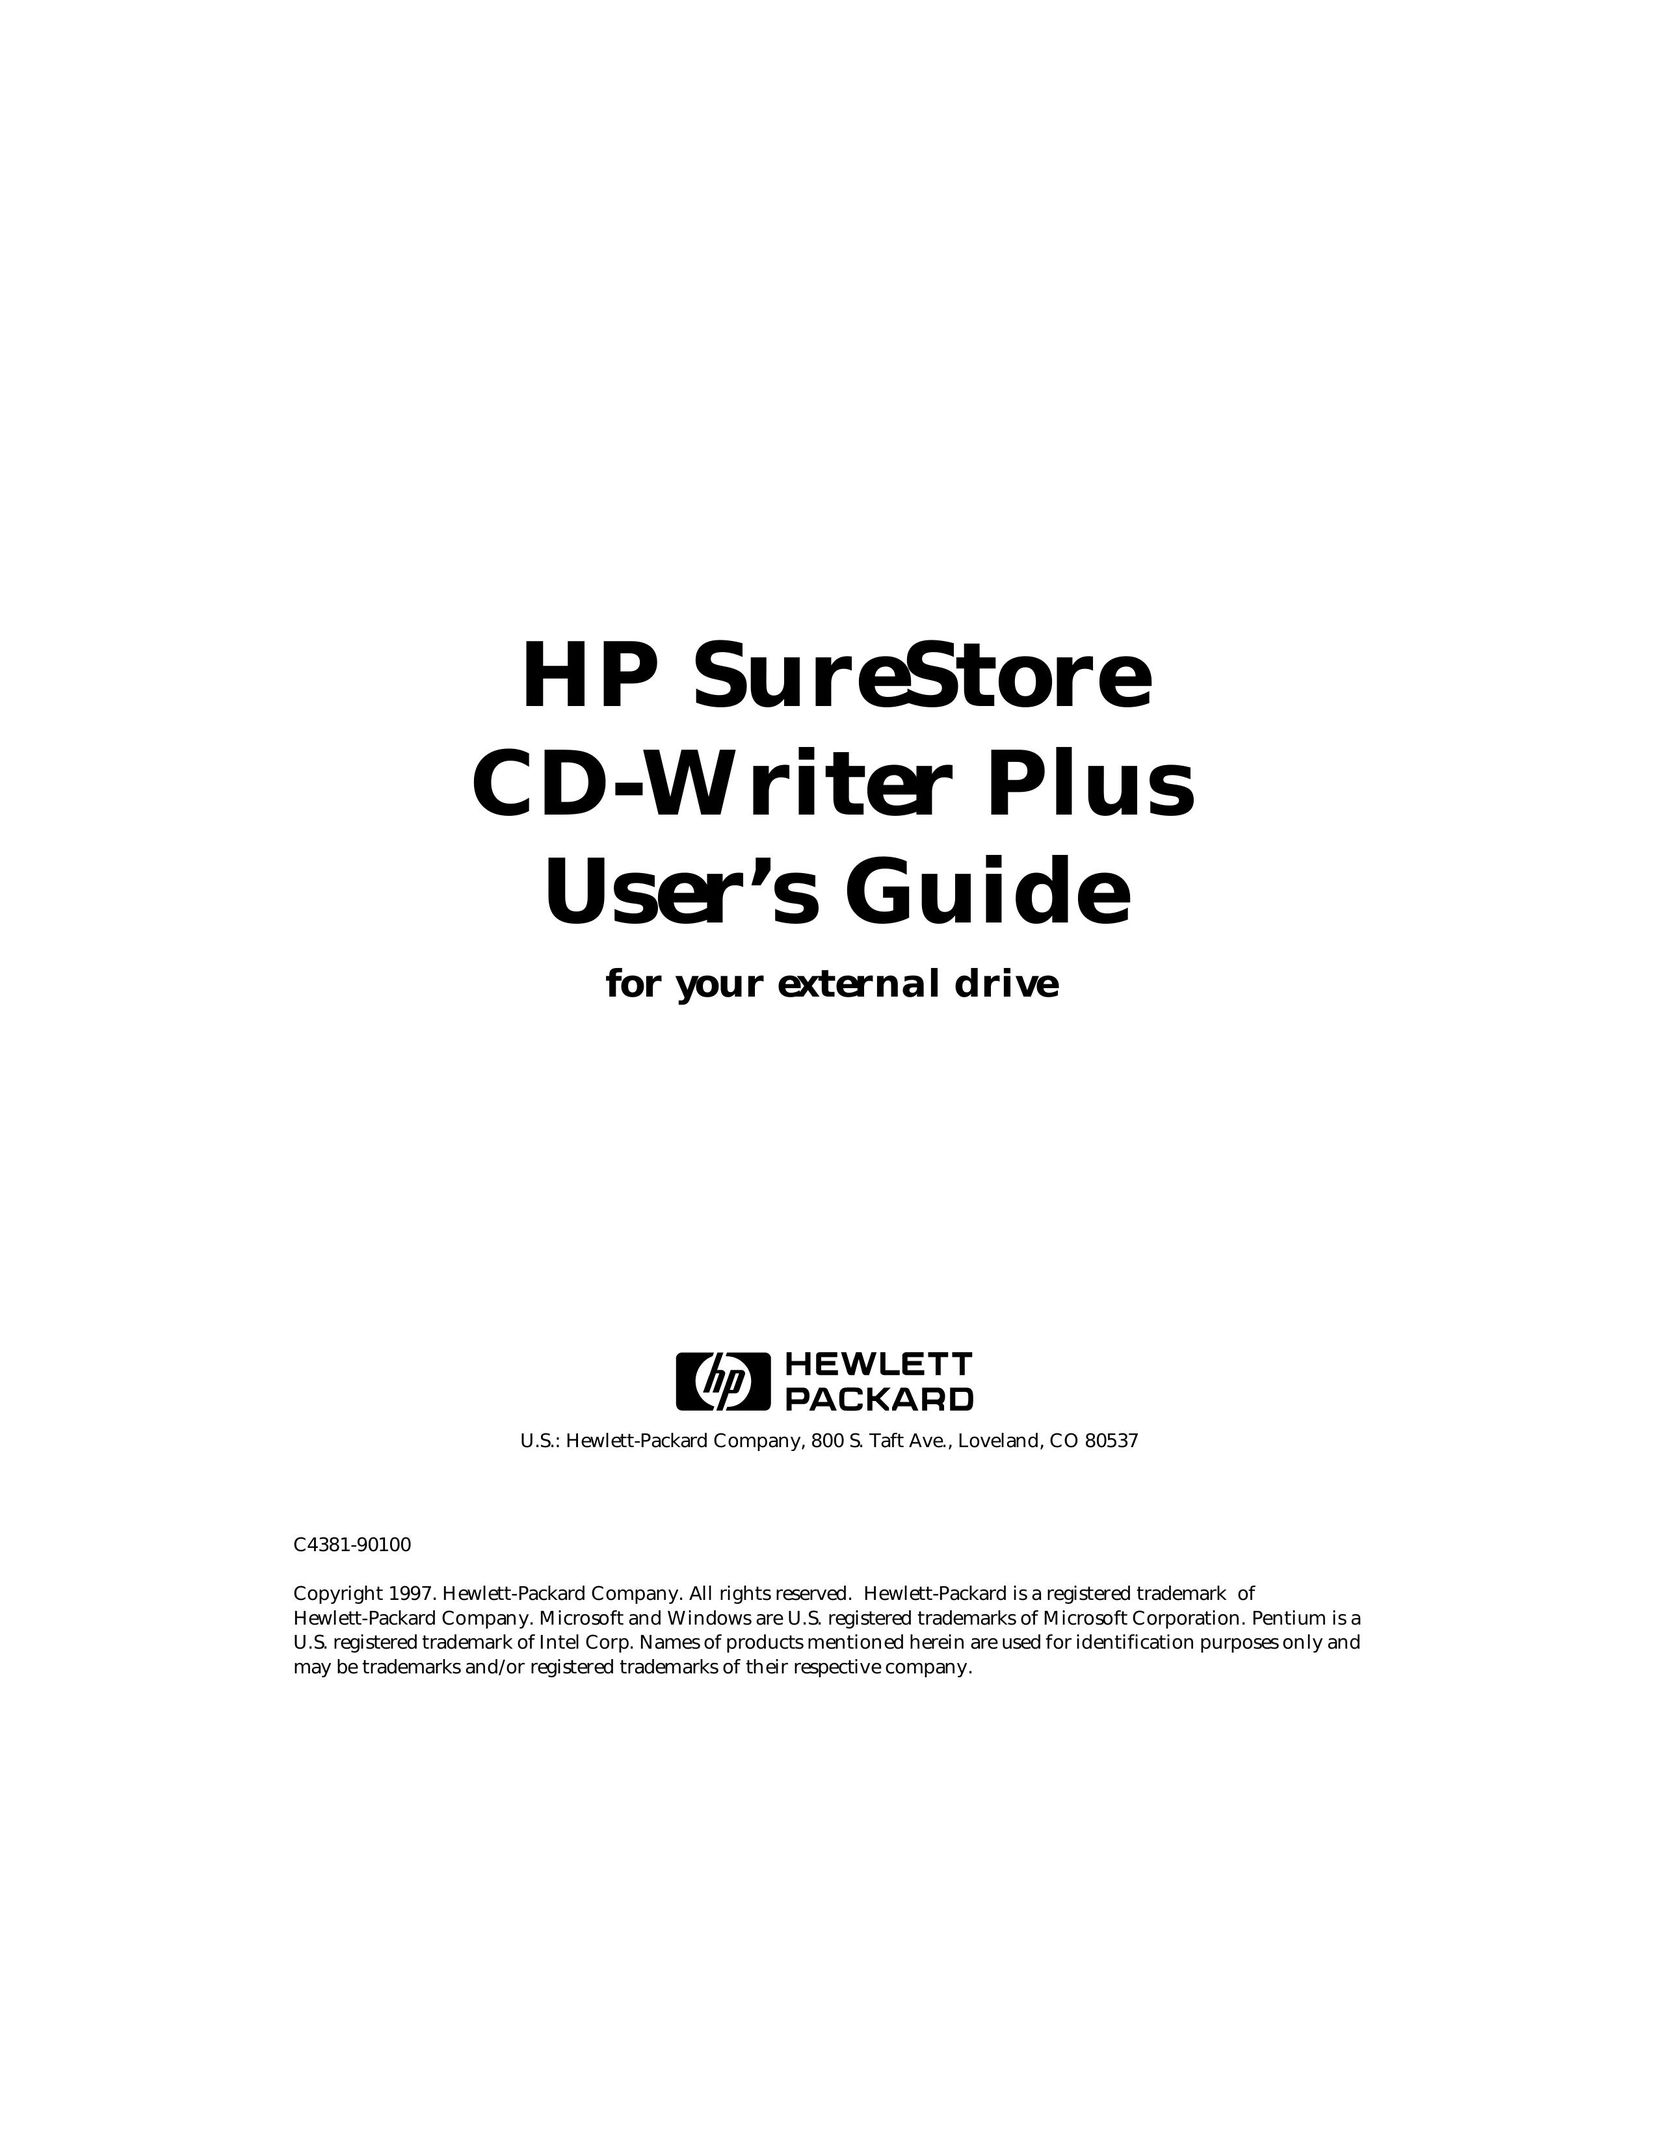 HP (Hewlett-Packard) C4381-90100 CD Player User Manual